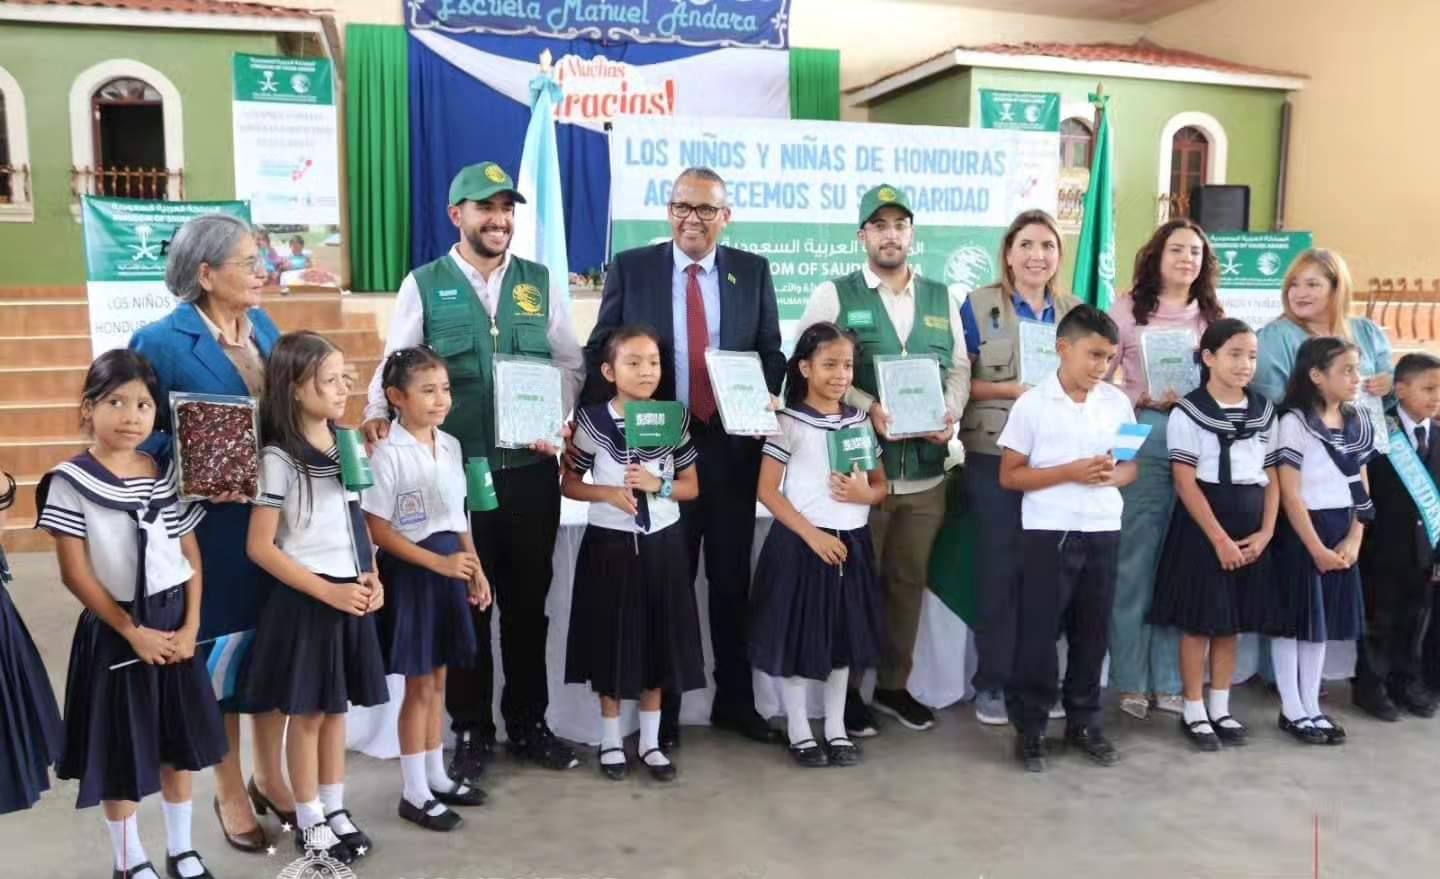 Arabia Saudita entrega donación de dátiles a niños de la Escuela Manuel Andará